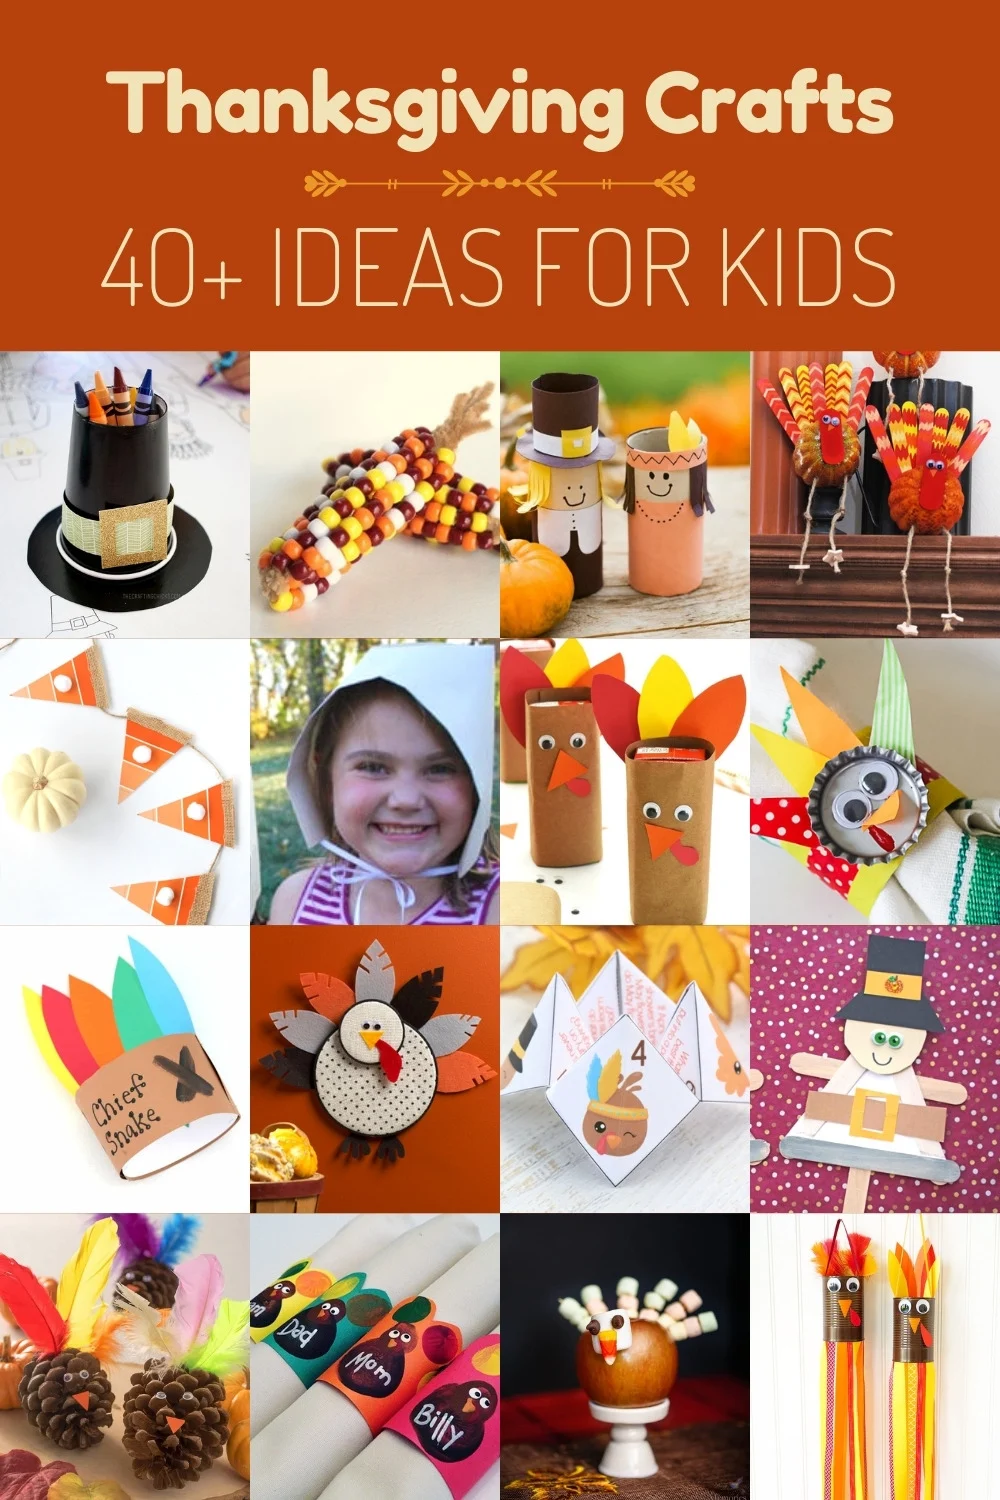 https://diycandy.b-cdn.net/wp-content/uploads/2021/08/Over-40-Kids-Thanksgiving-Crafts.jpg.webp